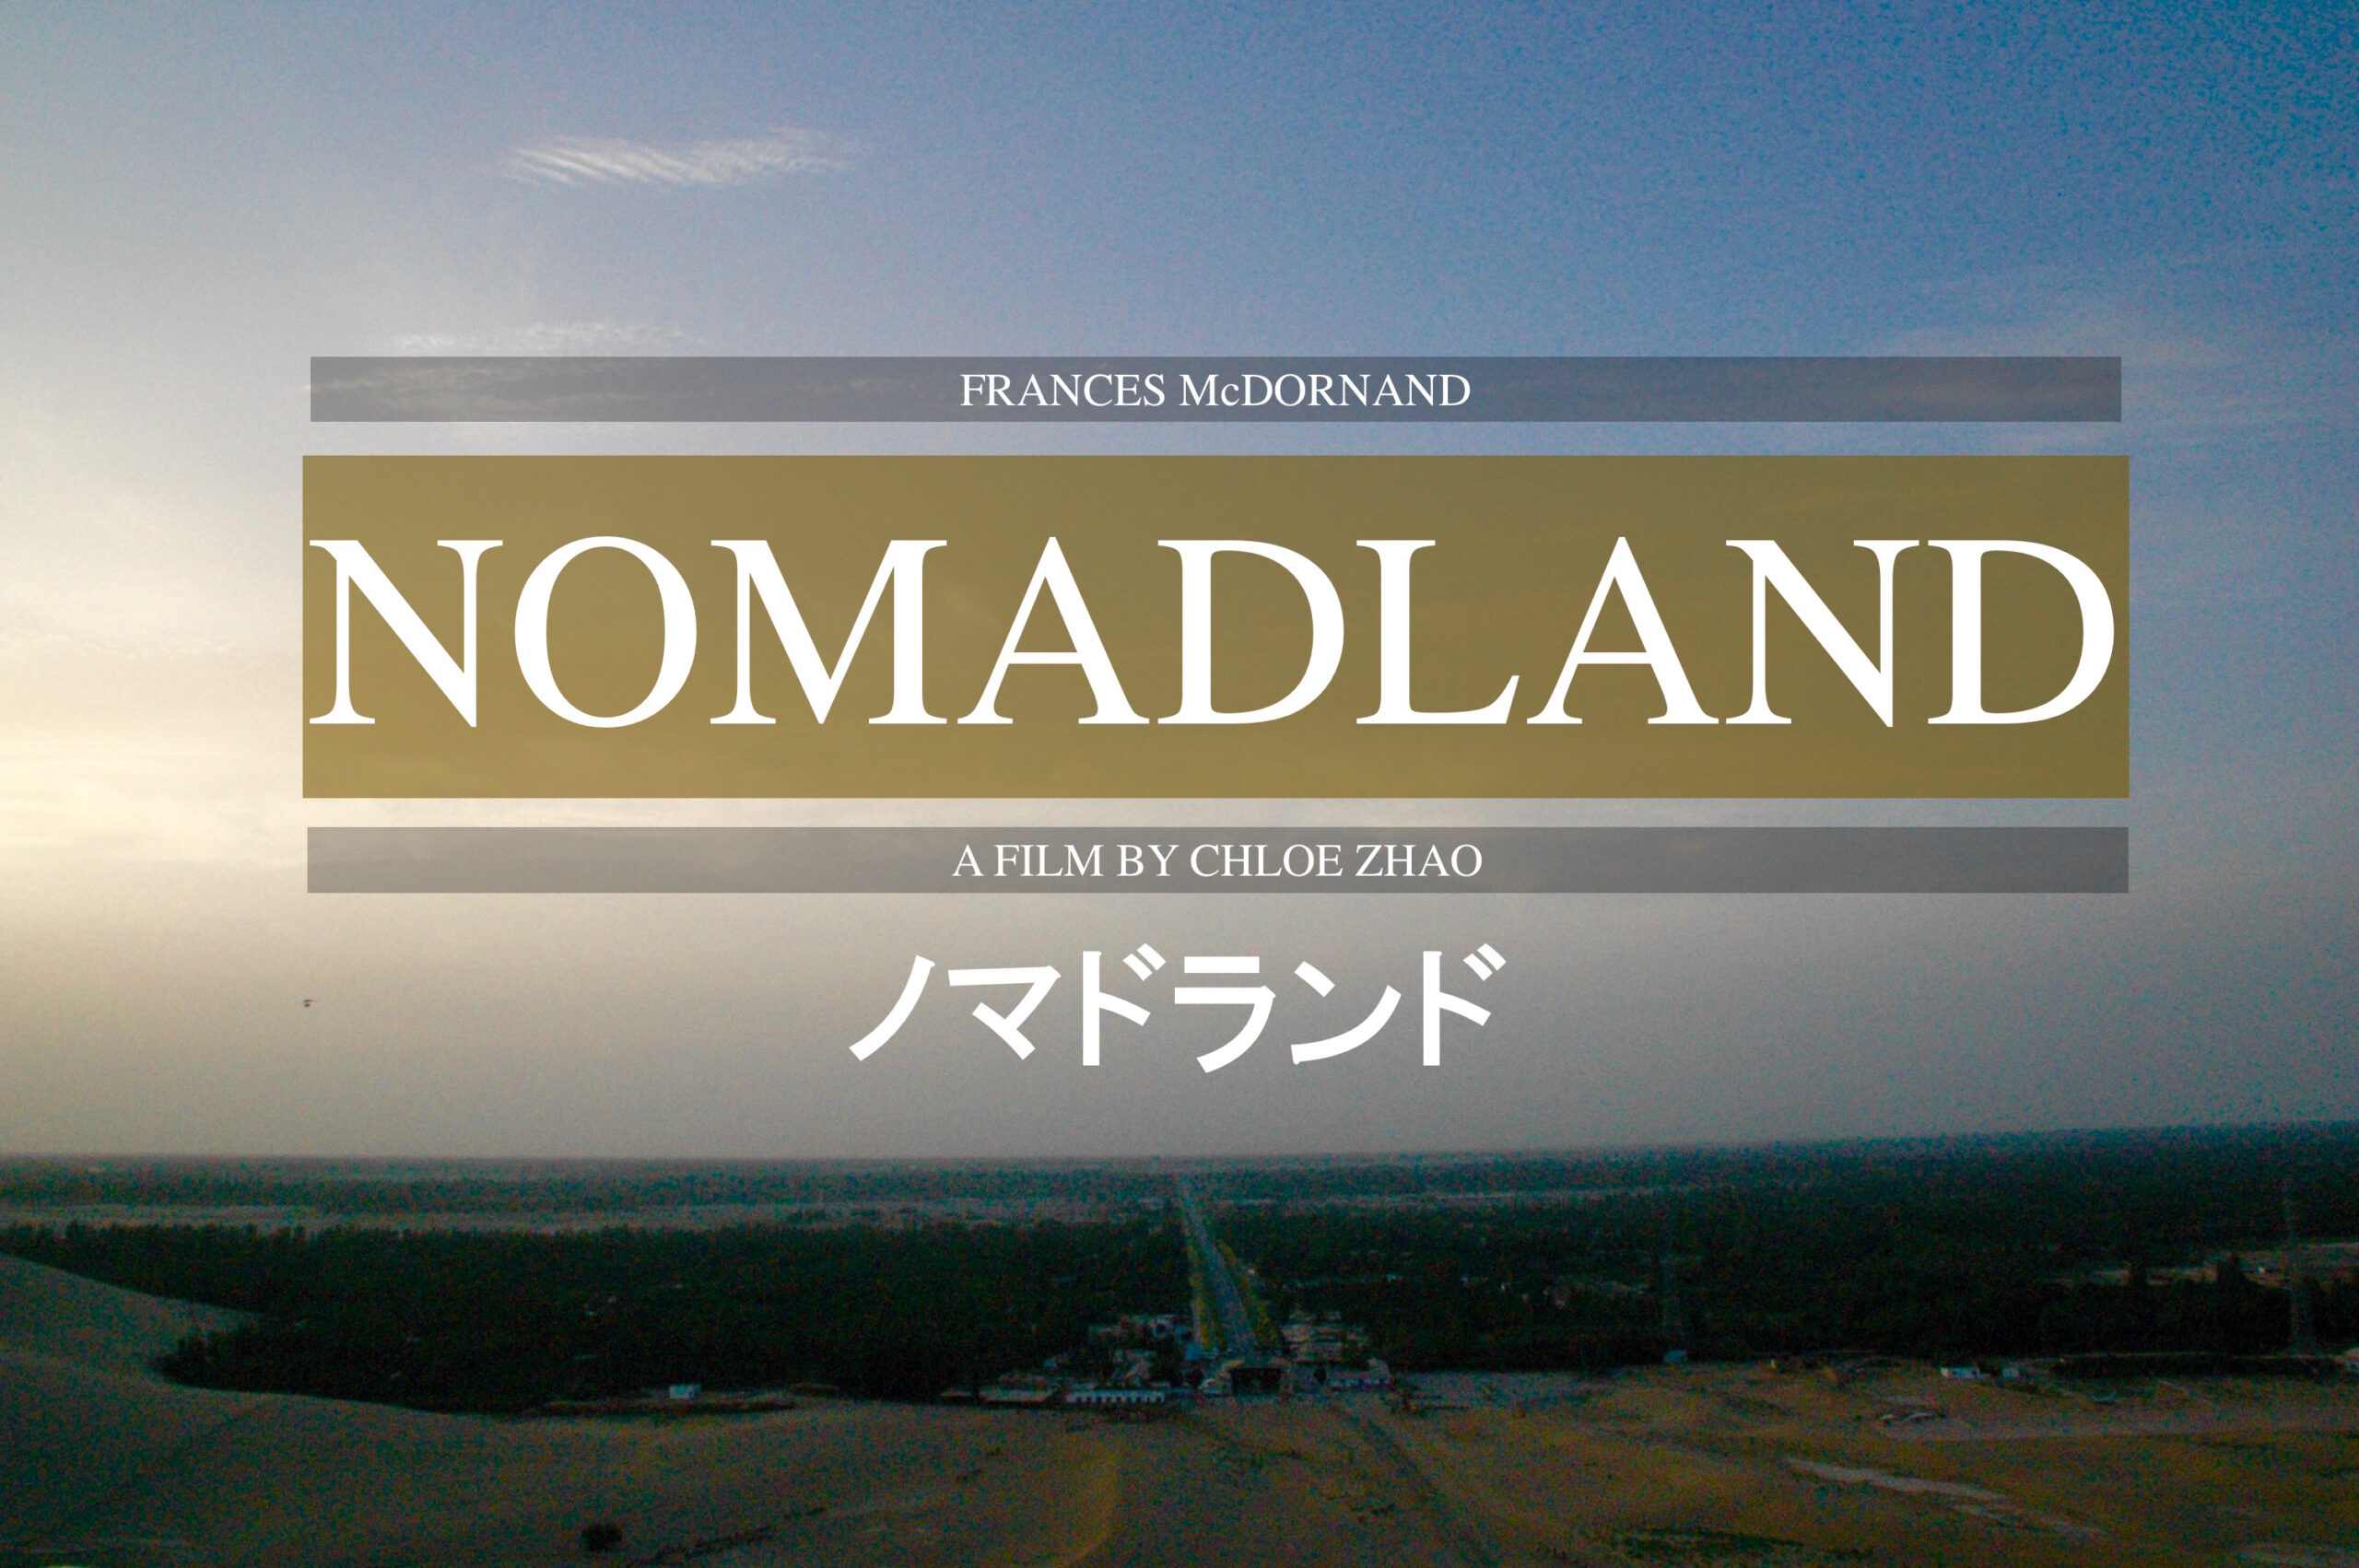 『ノマドランド』これは私の、あるいはあなたの物語かもしれない